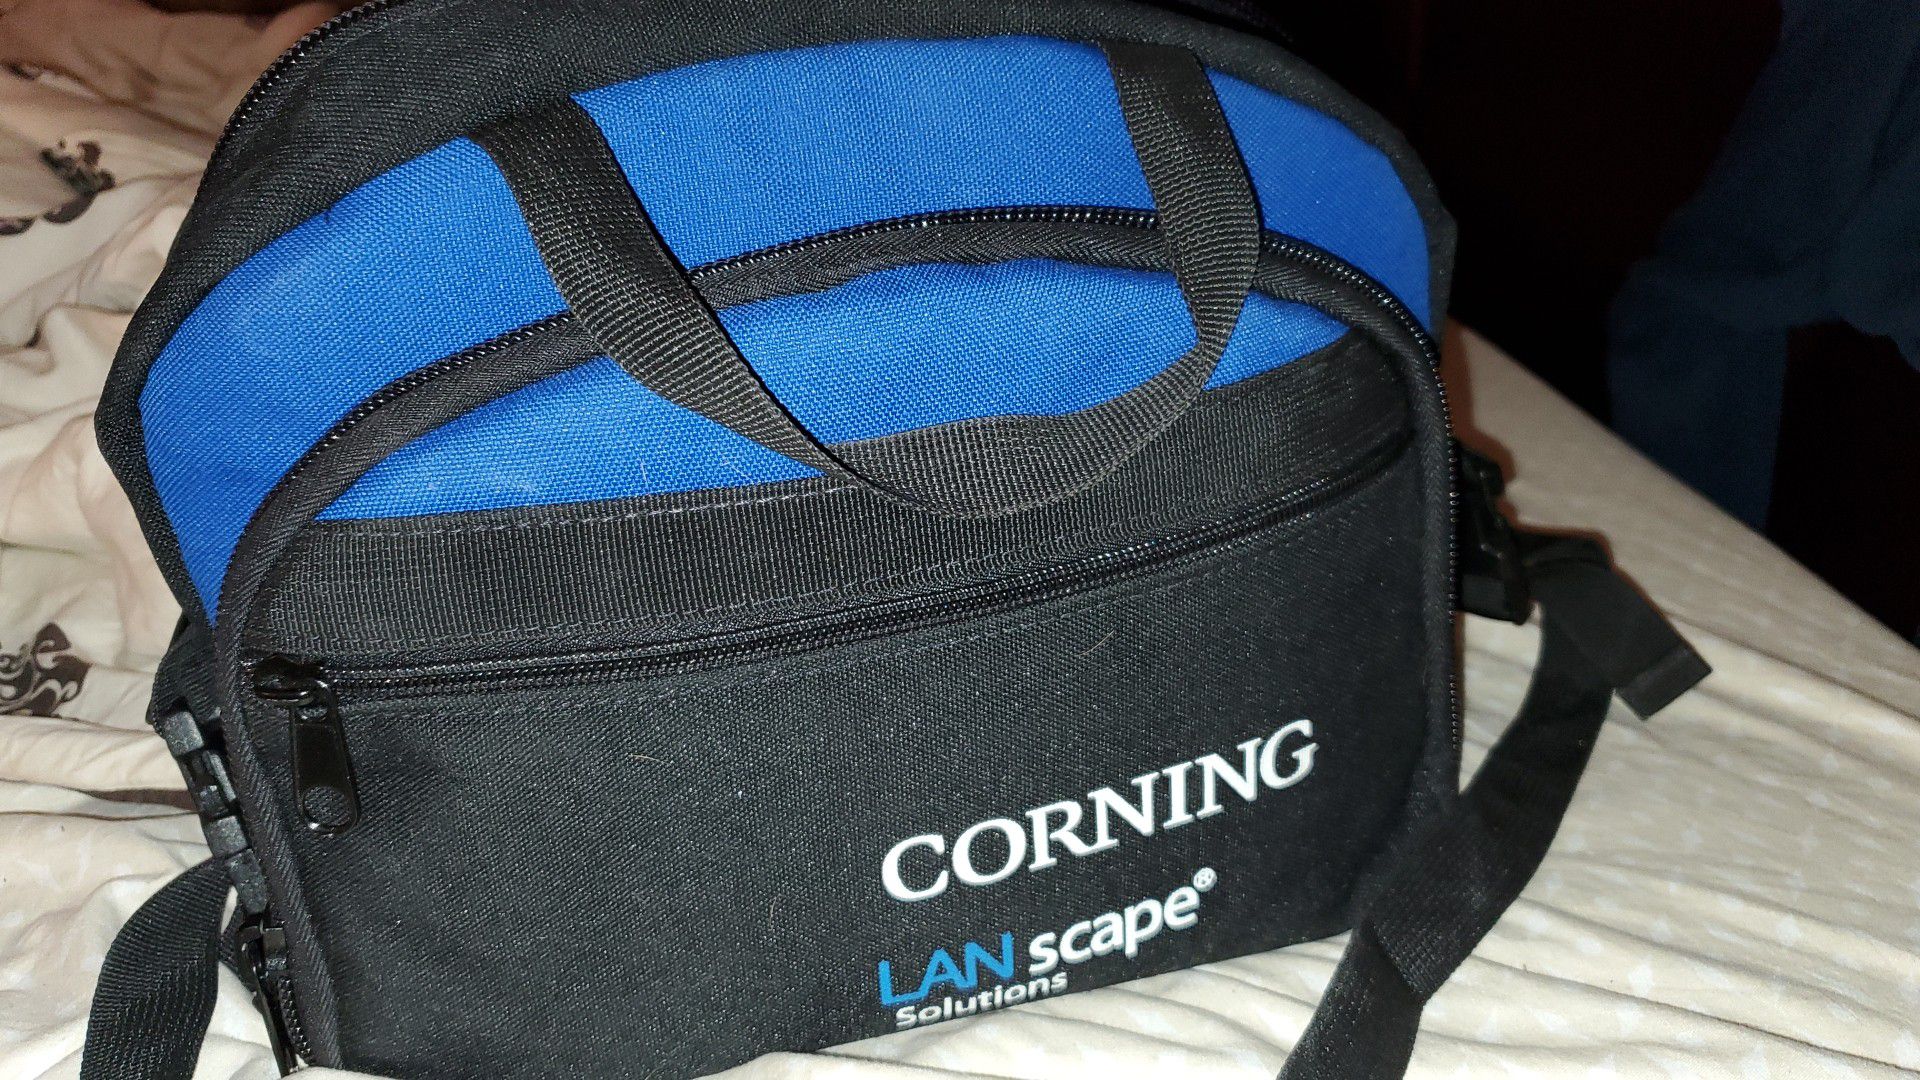 Corning lanscape unicam kit + 30 lc corning unicams